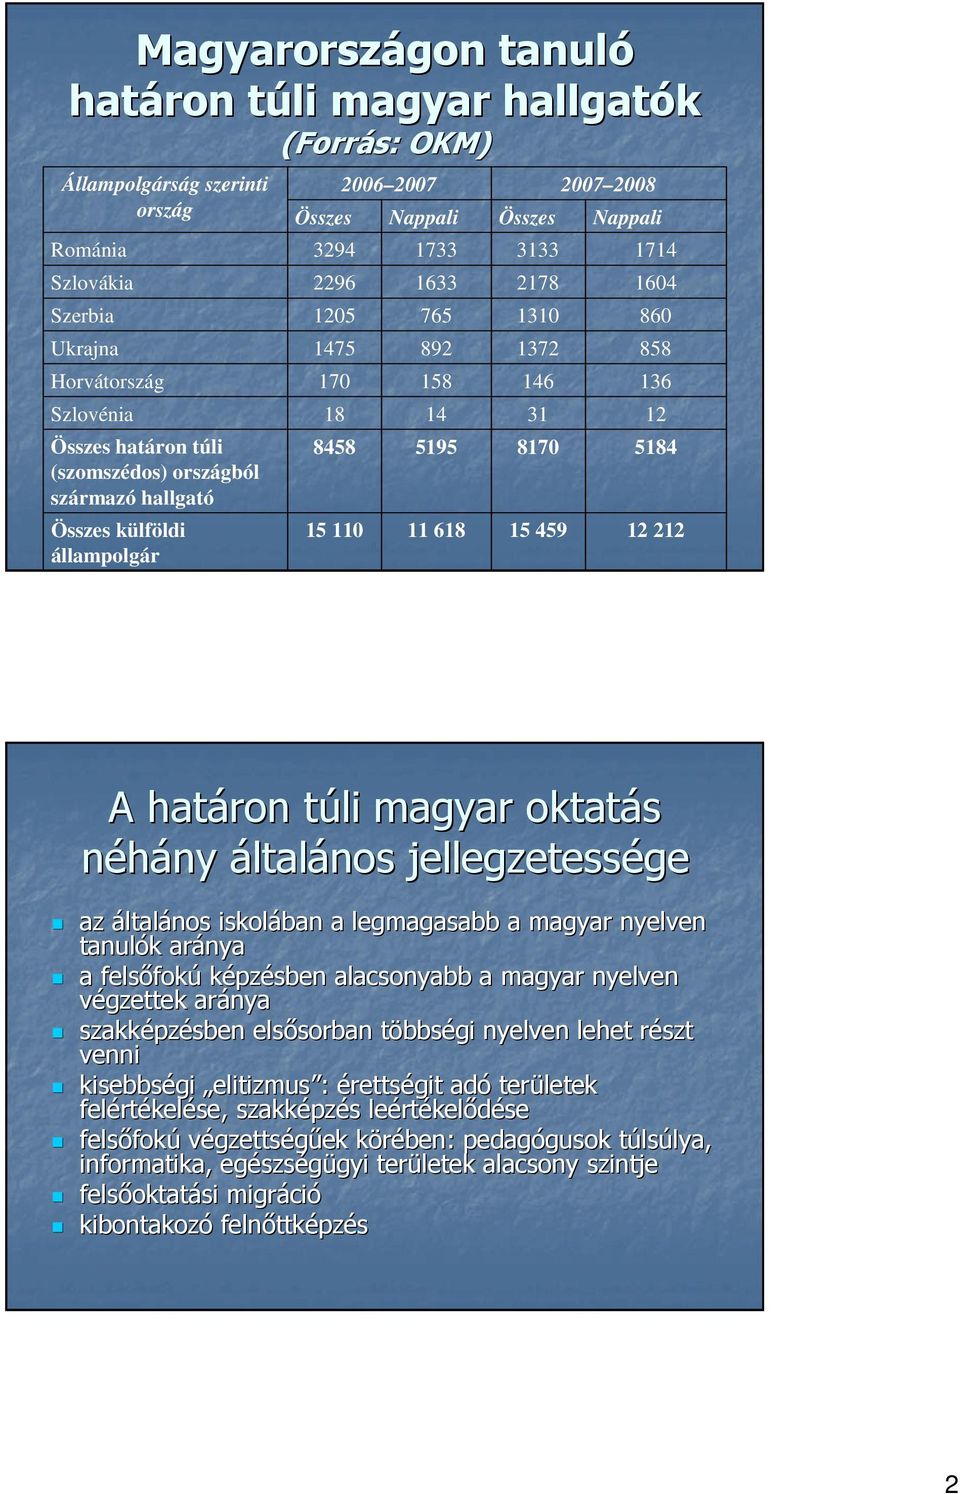 2007 2008 Nappali 1714 1604 860 858 136 12 5184 12 212 A határon túli t magyar oktatás néhány ny általános jellegzetessége ge az általános iskolában a legmagasabb a magyar nyelven tanulók k aránya a